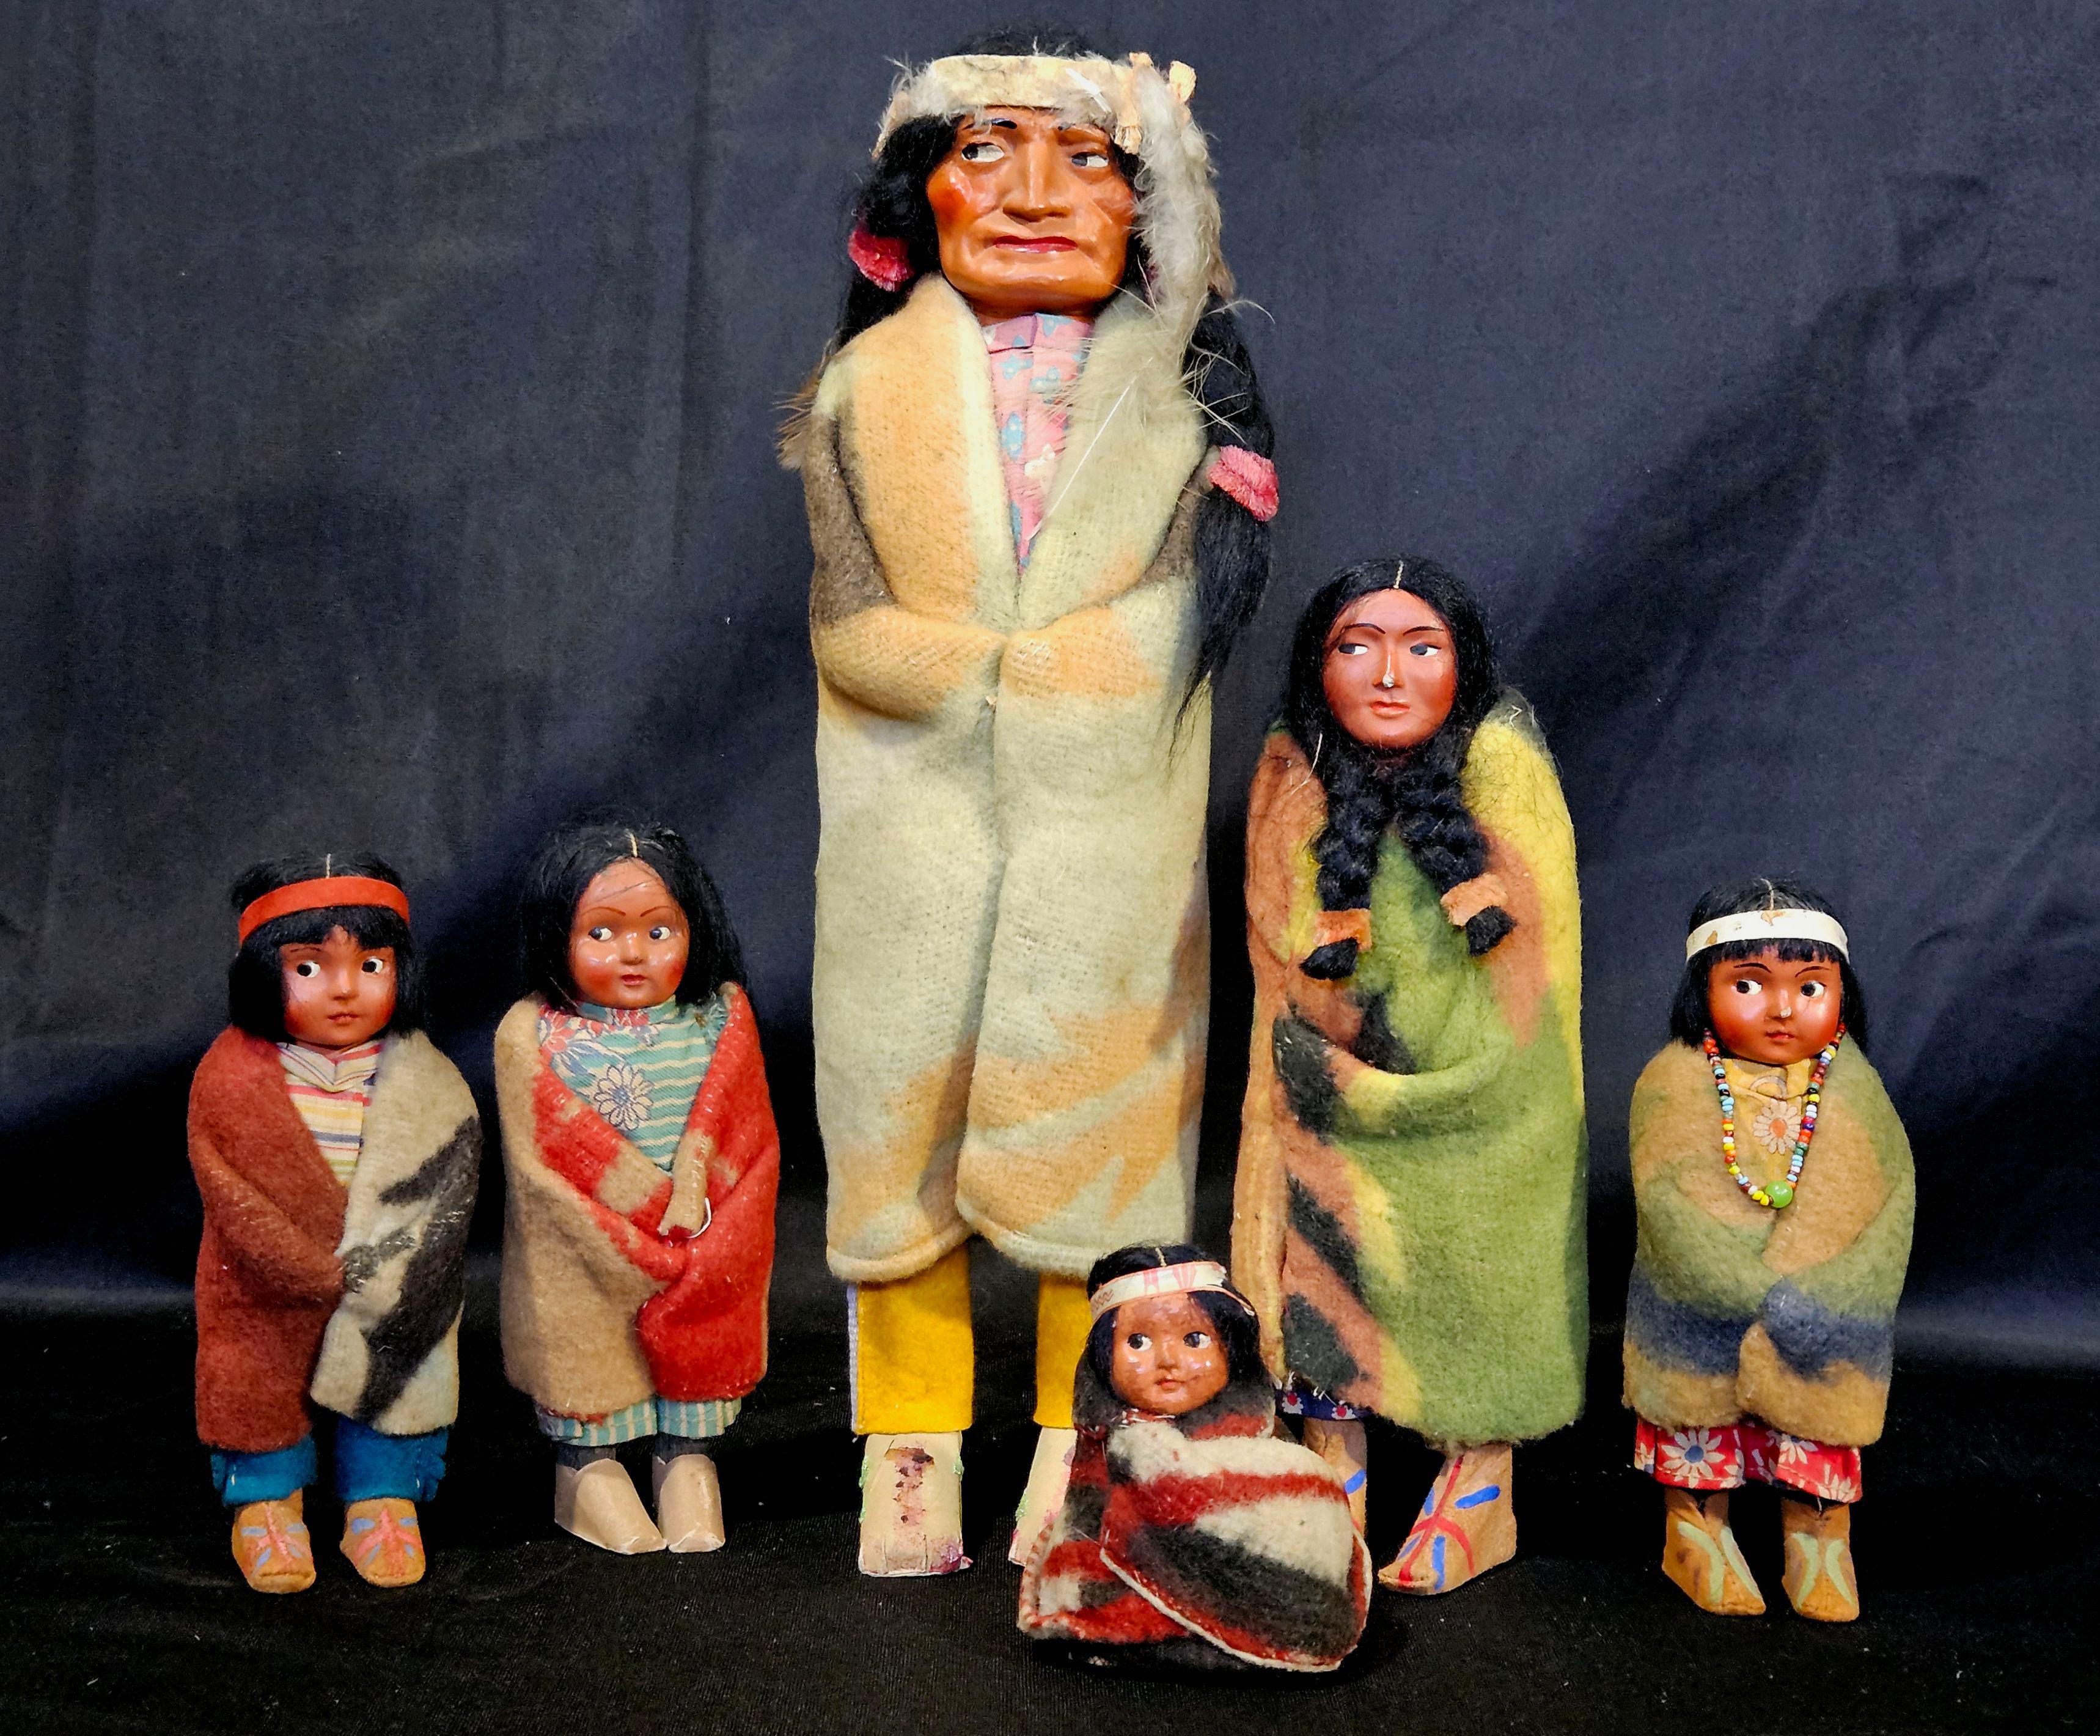 Une poupée Skookum était une poupée à thème amérindien, vendue comme article souvenir au début du 20e siècle.
Ils sont tous de tailles différentes. La dernière photo montre les dimensions (en pouces) de chaque poupée, L (largeur) x H (hauteur) x D